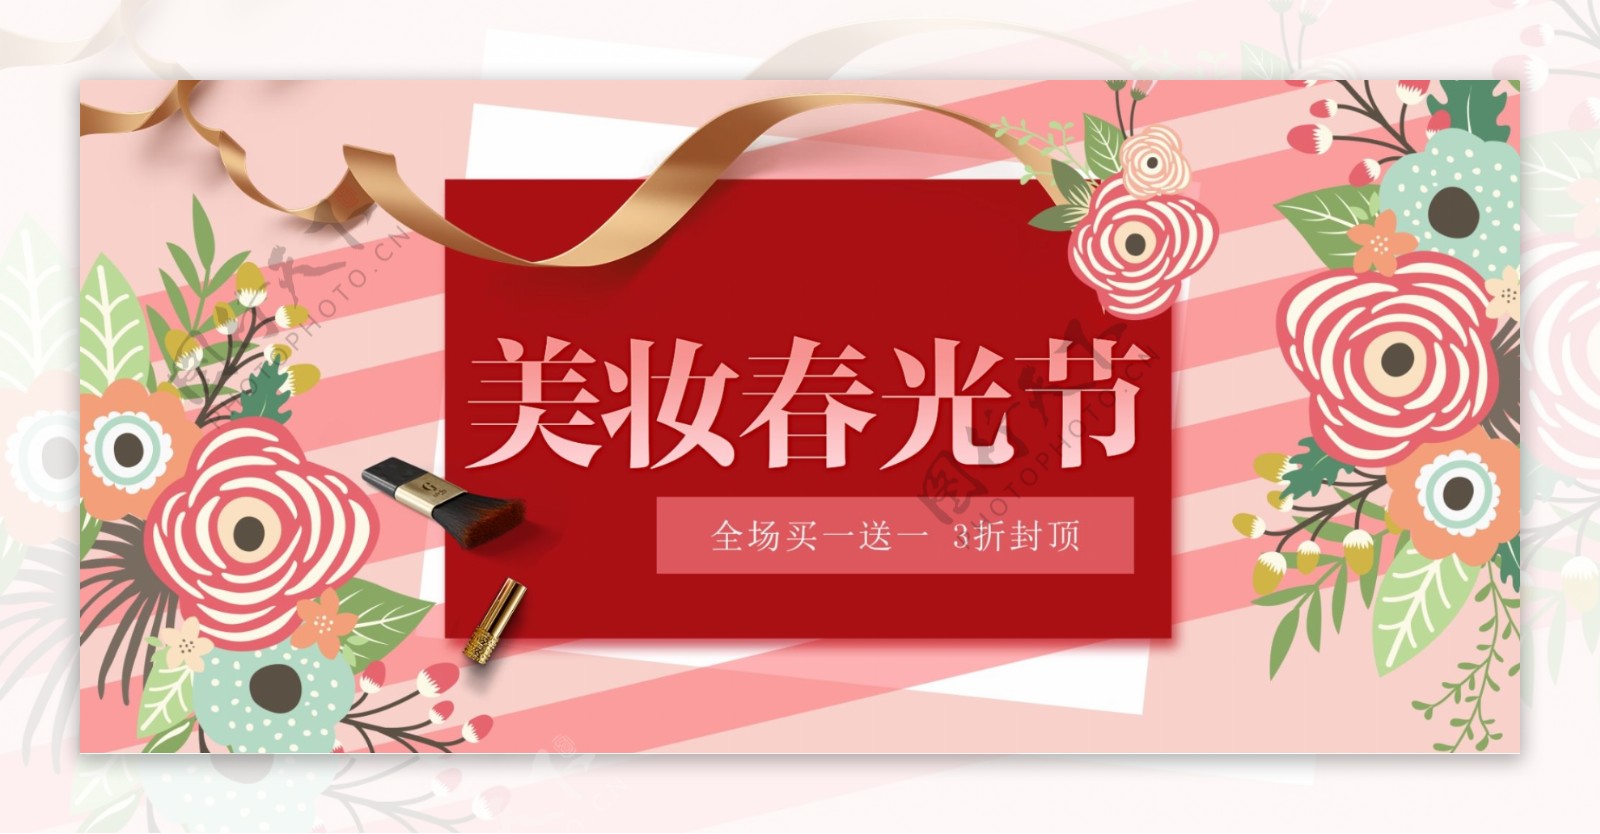 红色花朵美妆春光节海报美妆banner